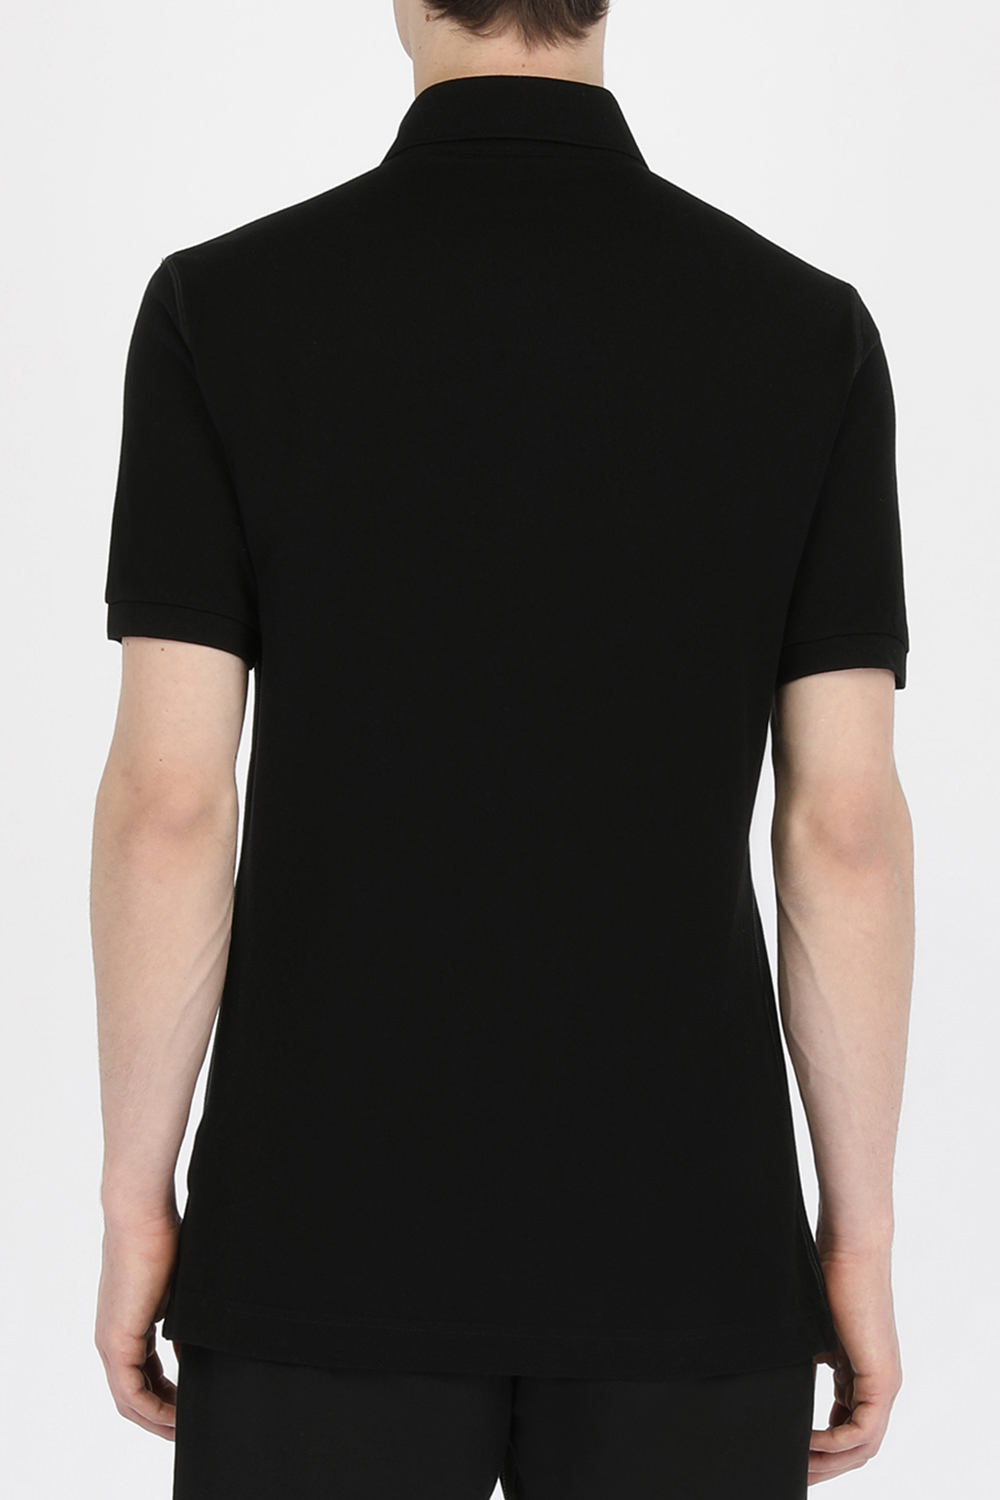 חולצת פולו שחורה מכותנה עם לוחית לוגו מטאלית DOLCE & GABBANA